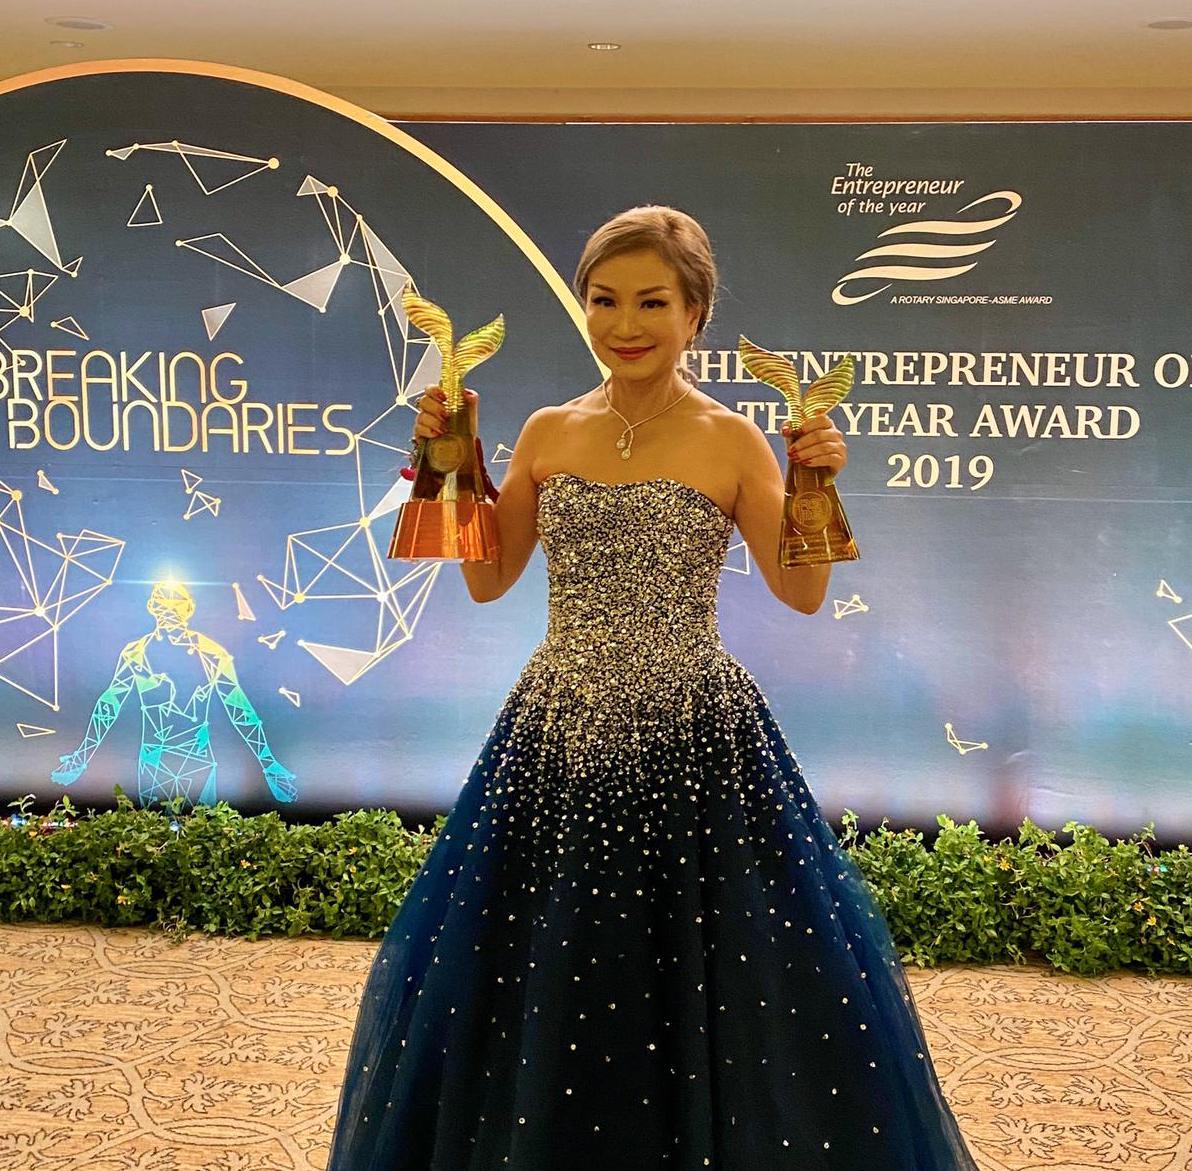 Winner of Entrepreneur of the Year Award 2019 Established Entrepreneur Category 